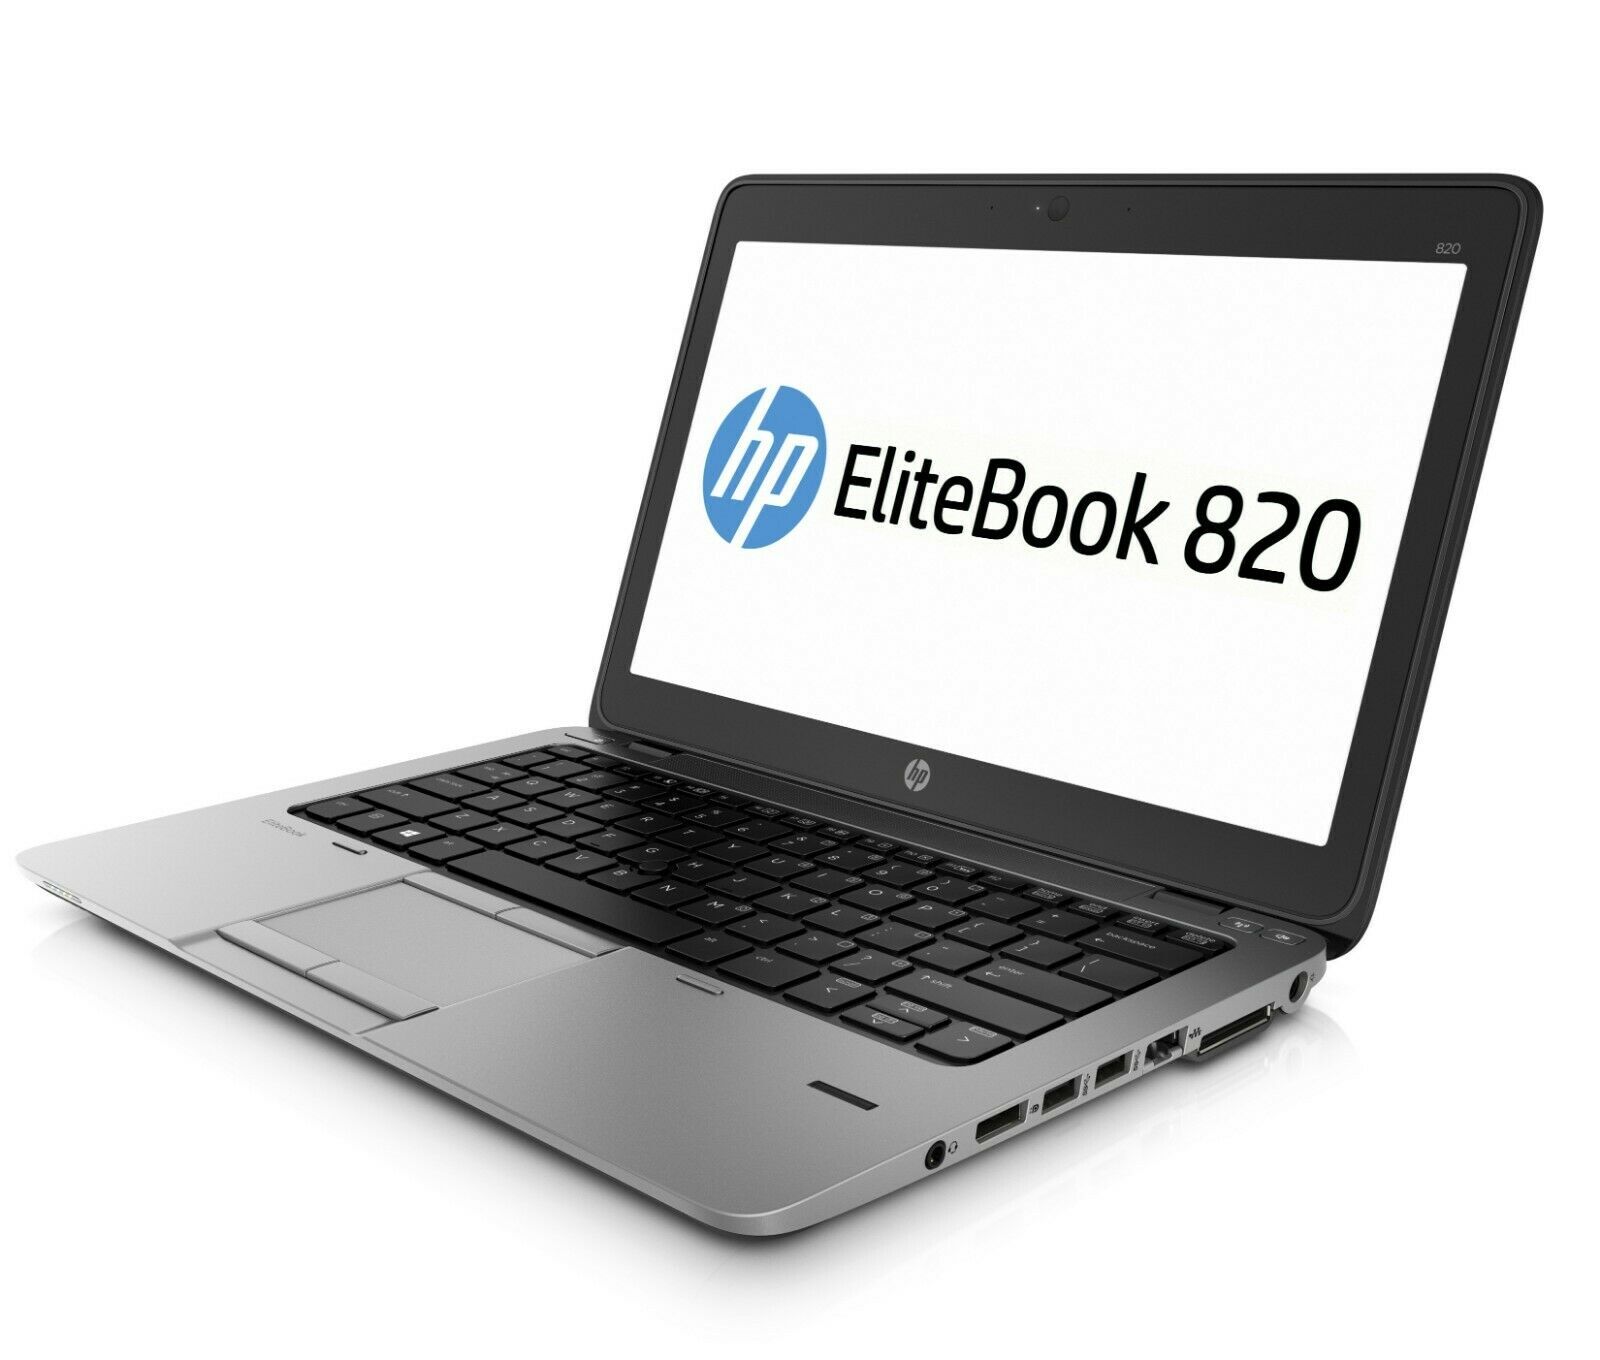 HP Elitebook 820 G2 Intel i5 5300u 2.3Ghz 8Gb Ram 128Gb SSD 12.5" HD Win 10 Pro